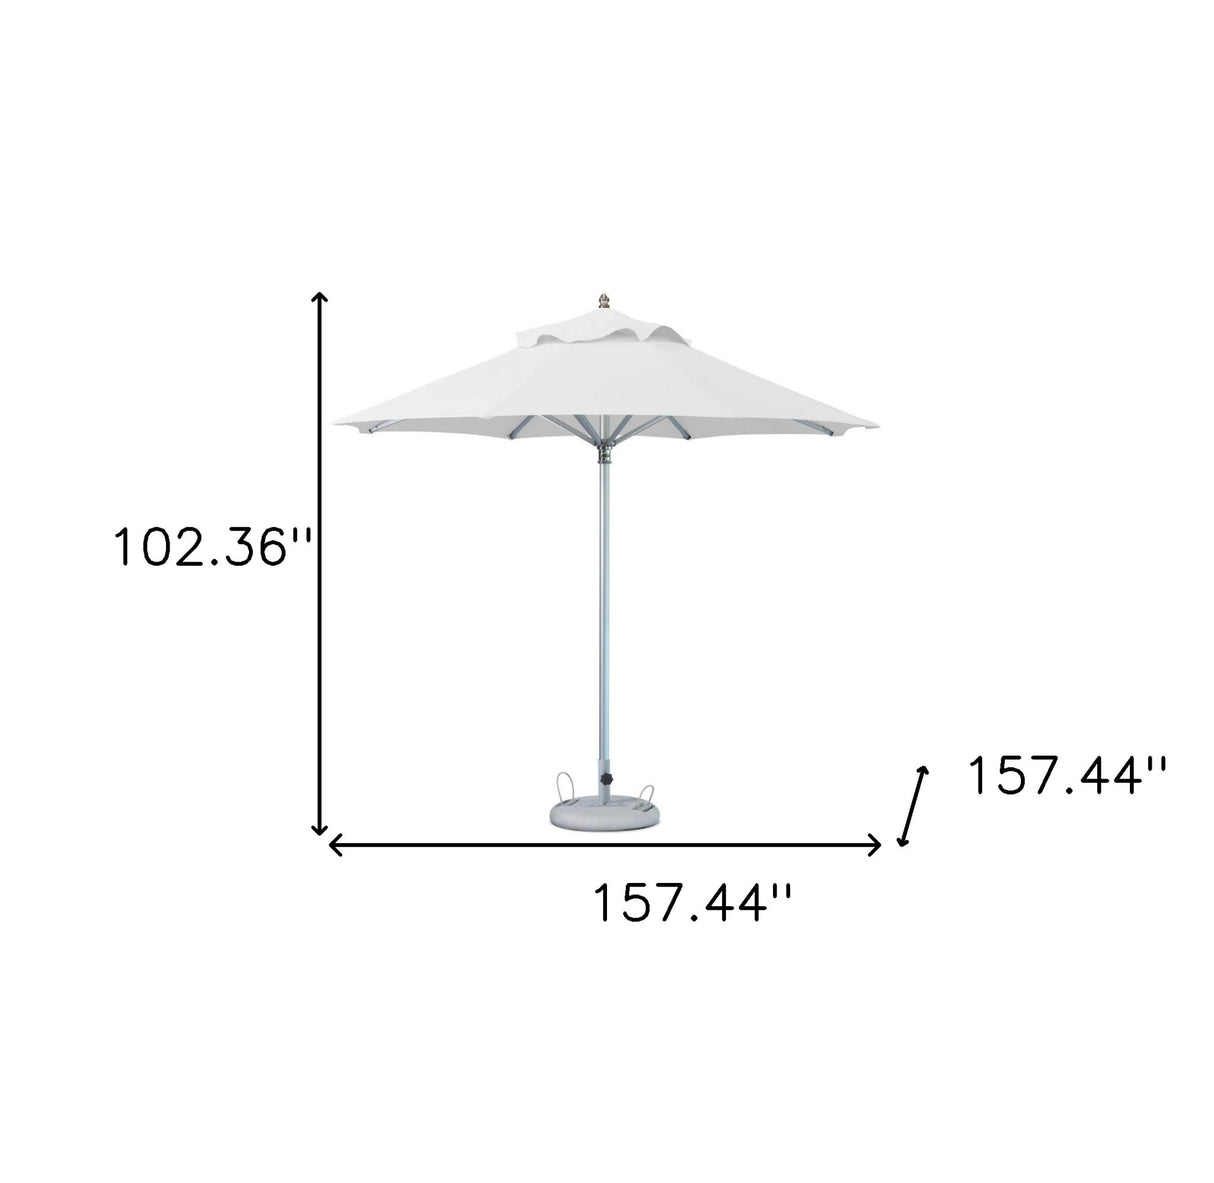 13' White Polyester Round Market Patio Umbrella